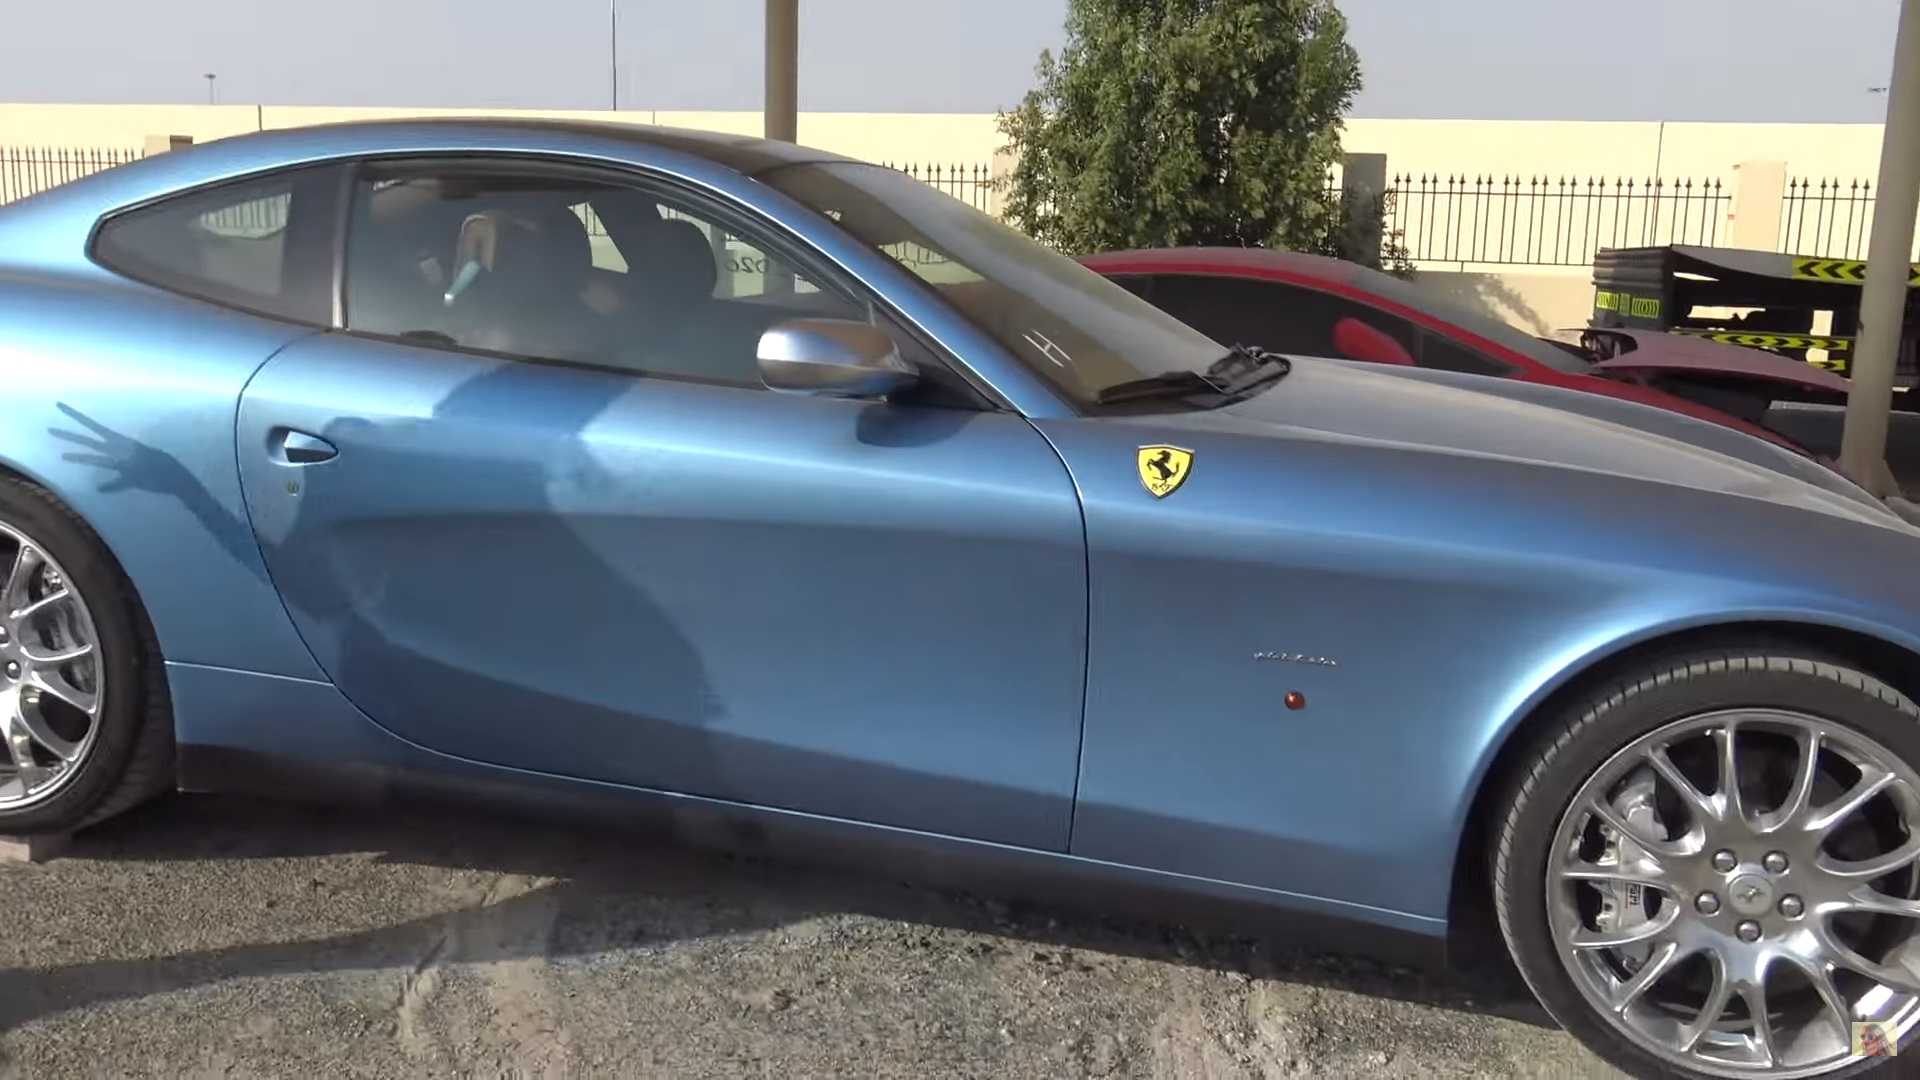 ساحة خردة في دبي تستضيف سيارات فاخرة ورياضية من كل نوع "فيديو" 32